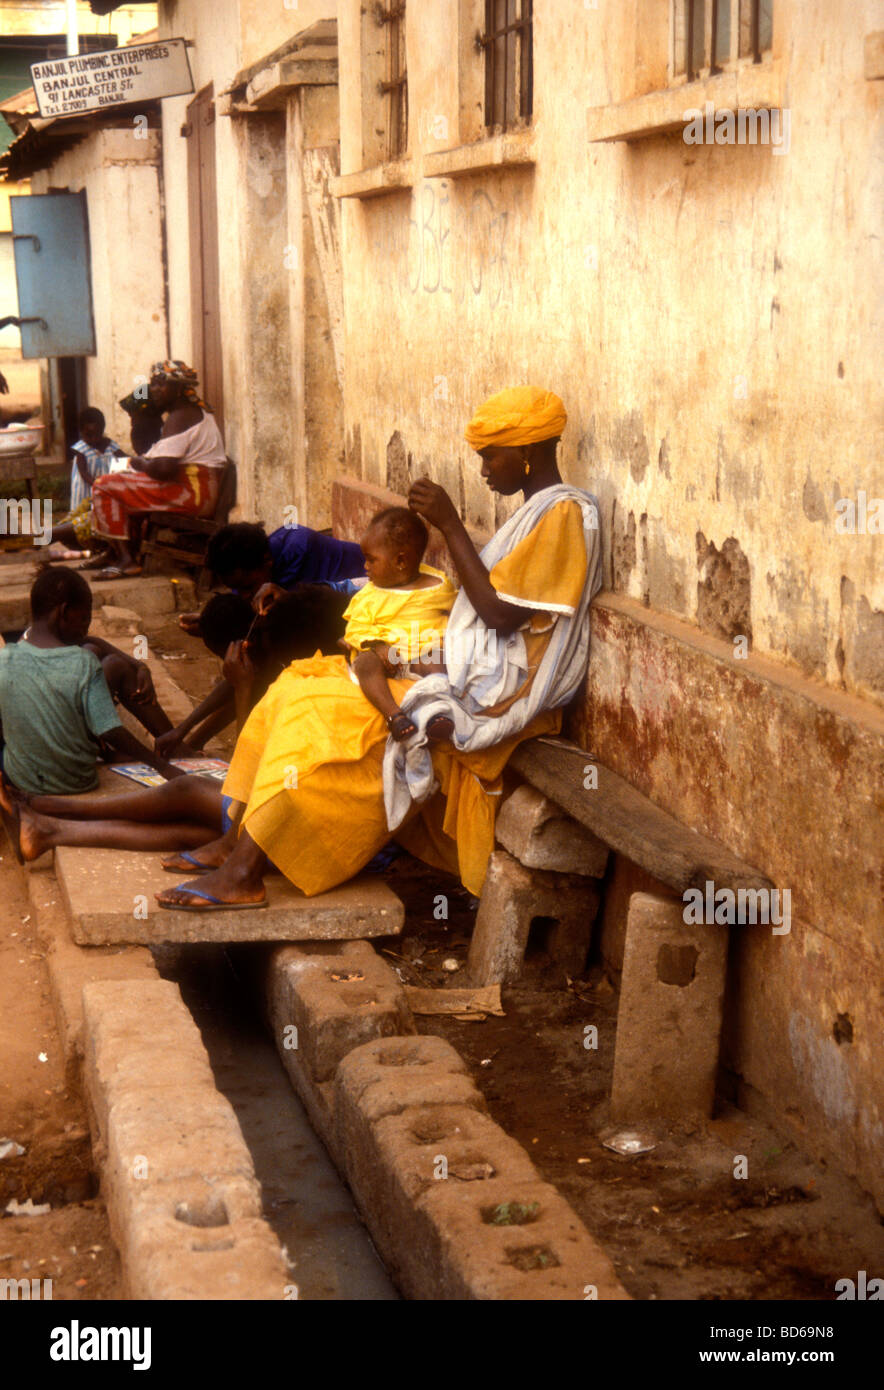 Scène de rue dans un quartier pauvre de Banjul Gambie Banque D'Images